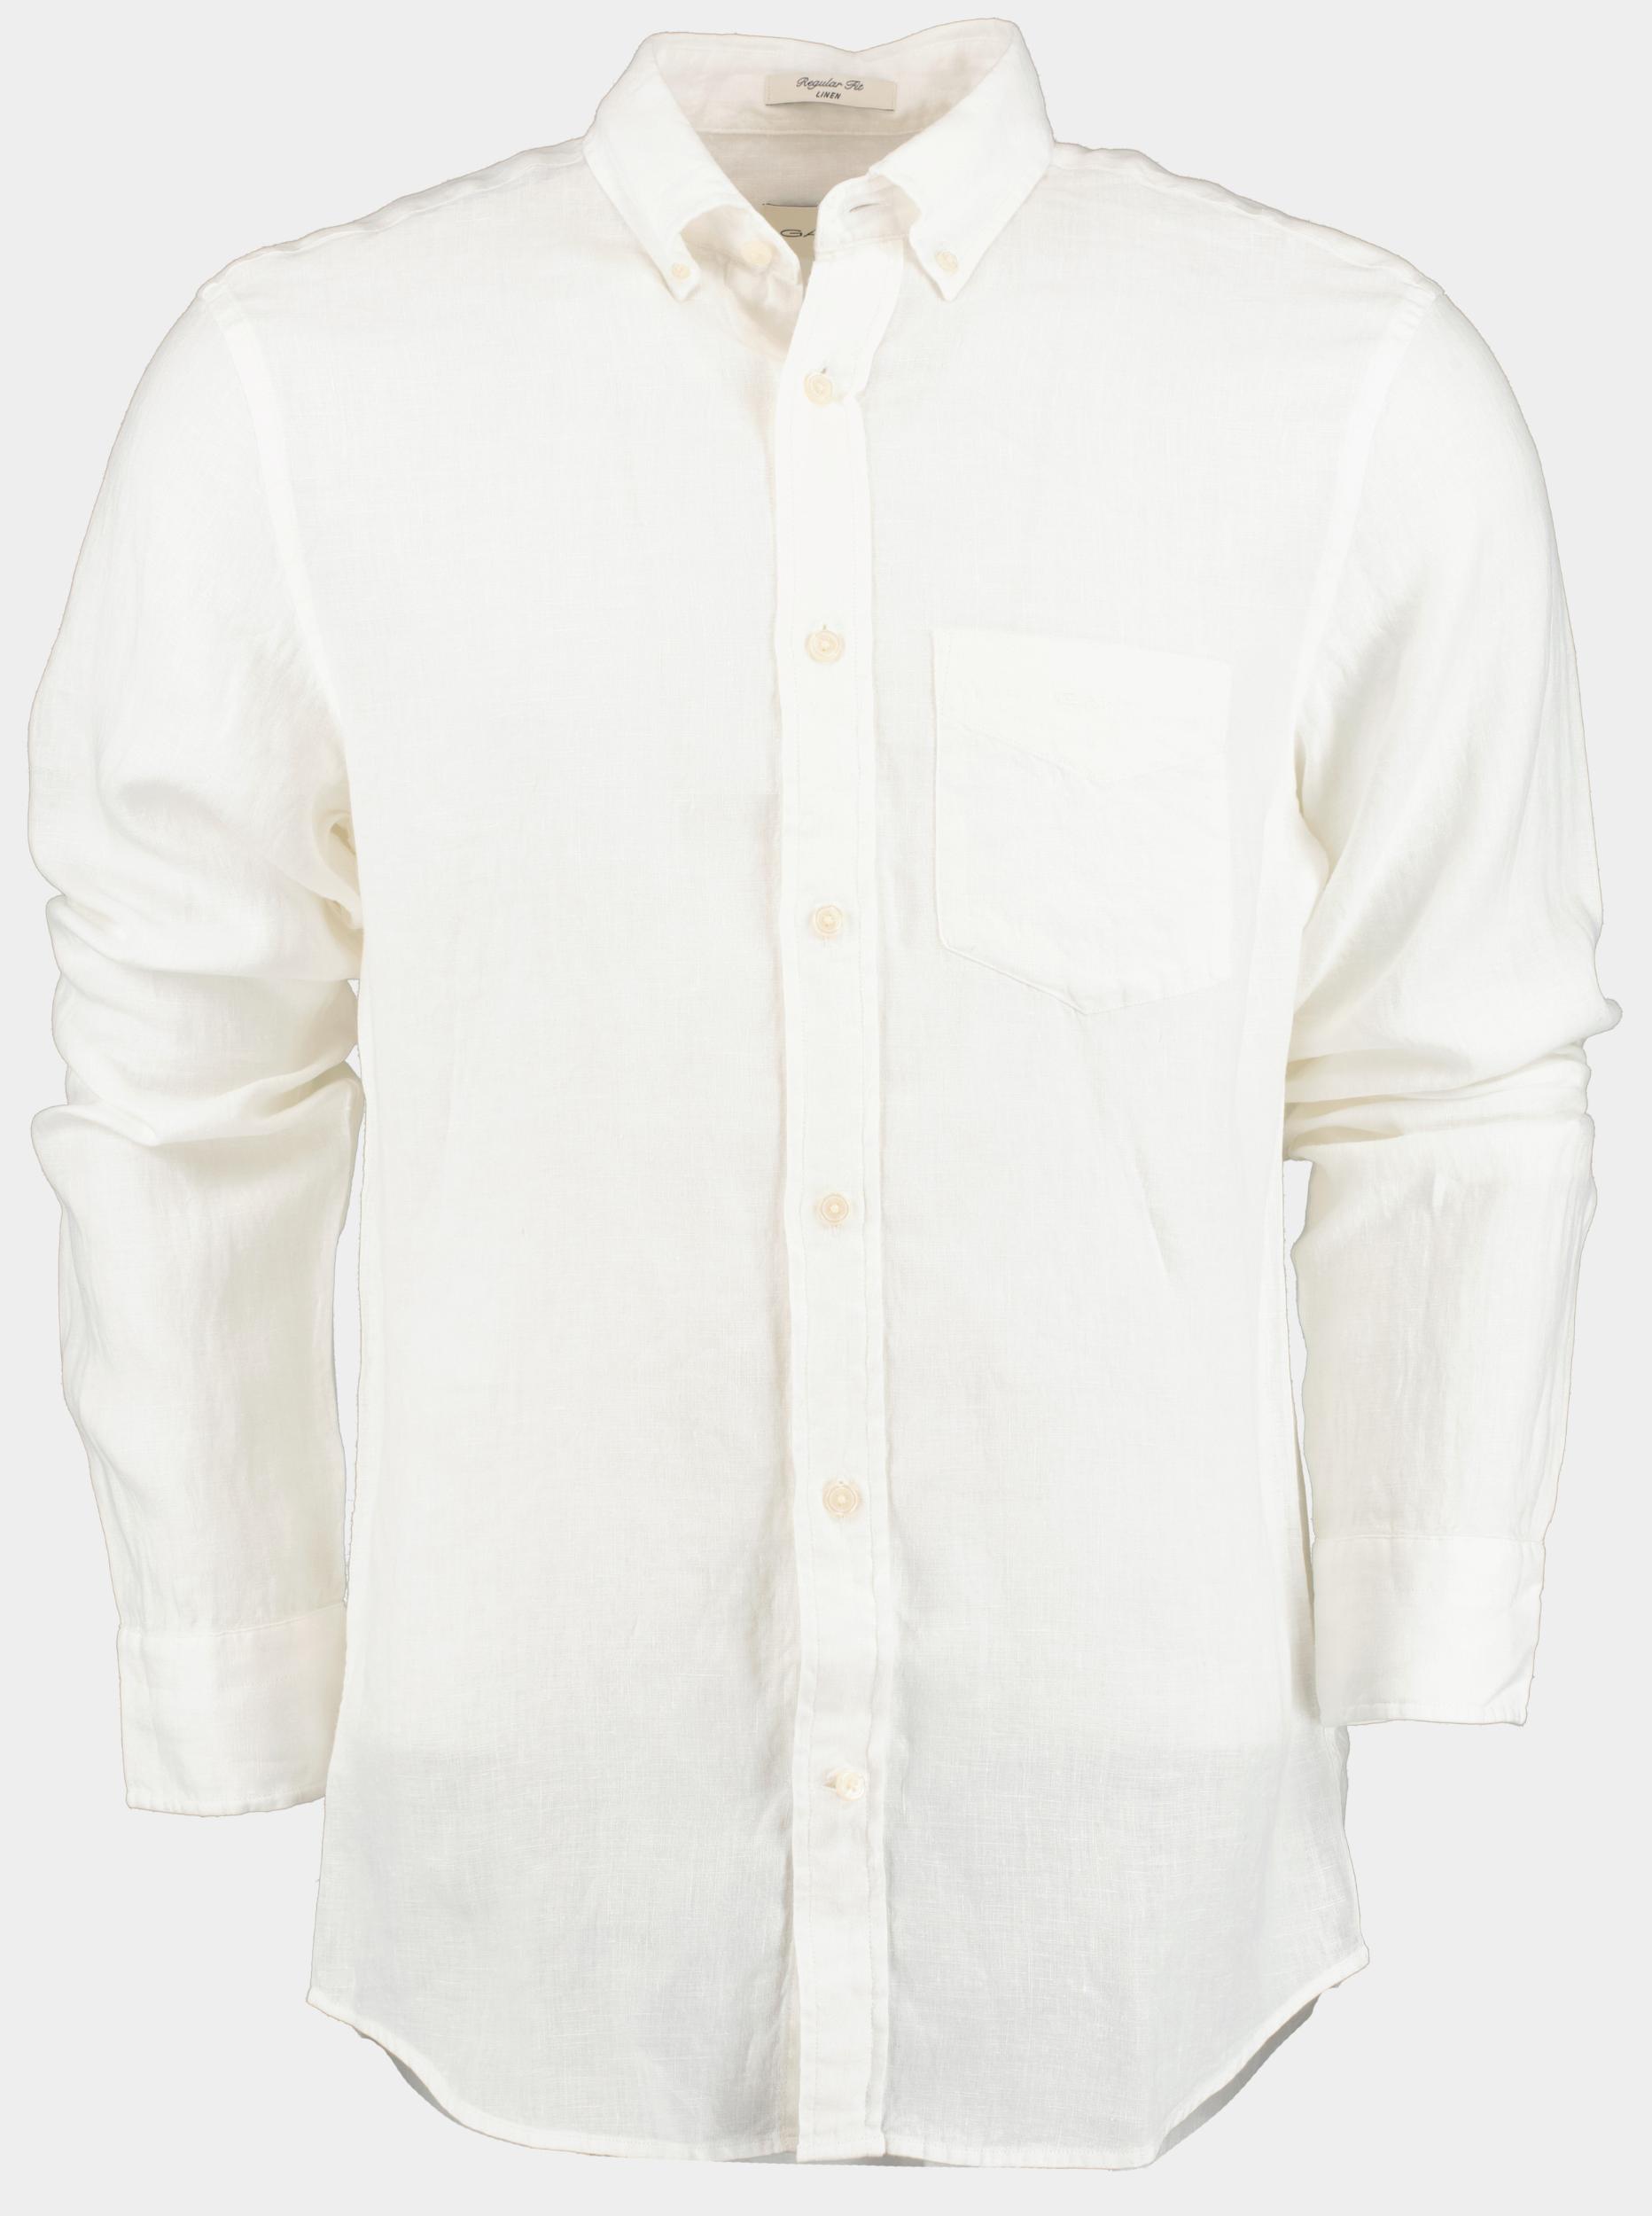 Gant Casual hemd lange mouw Wit Linen Shirt 3240102/110